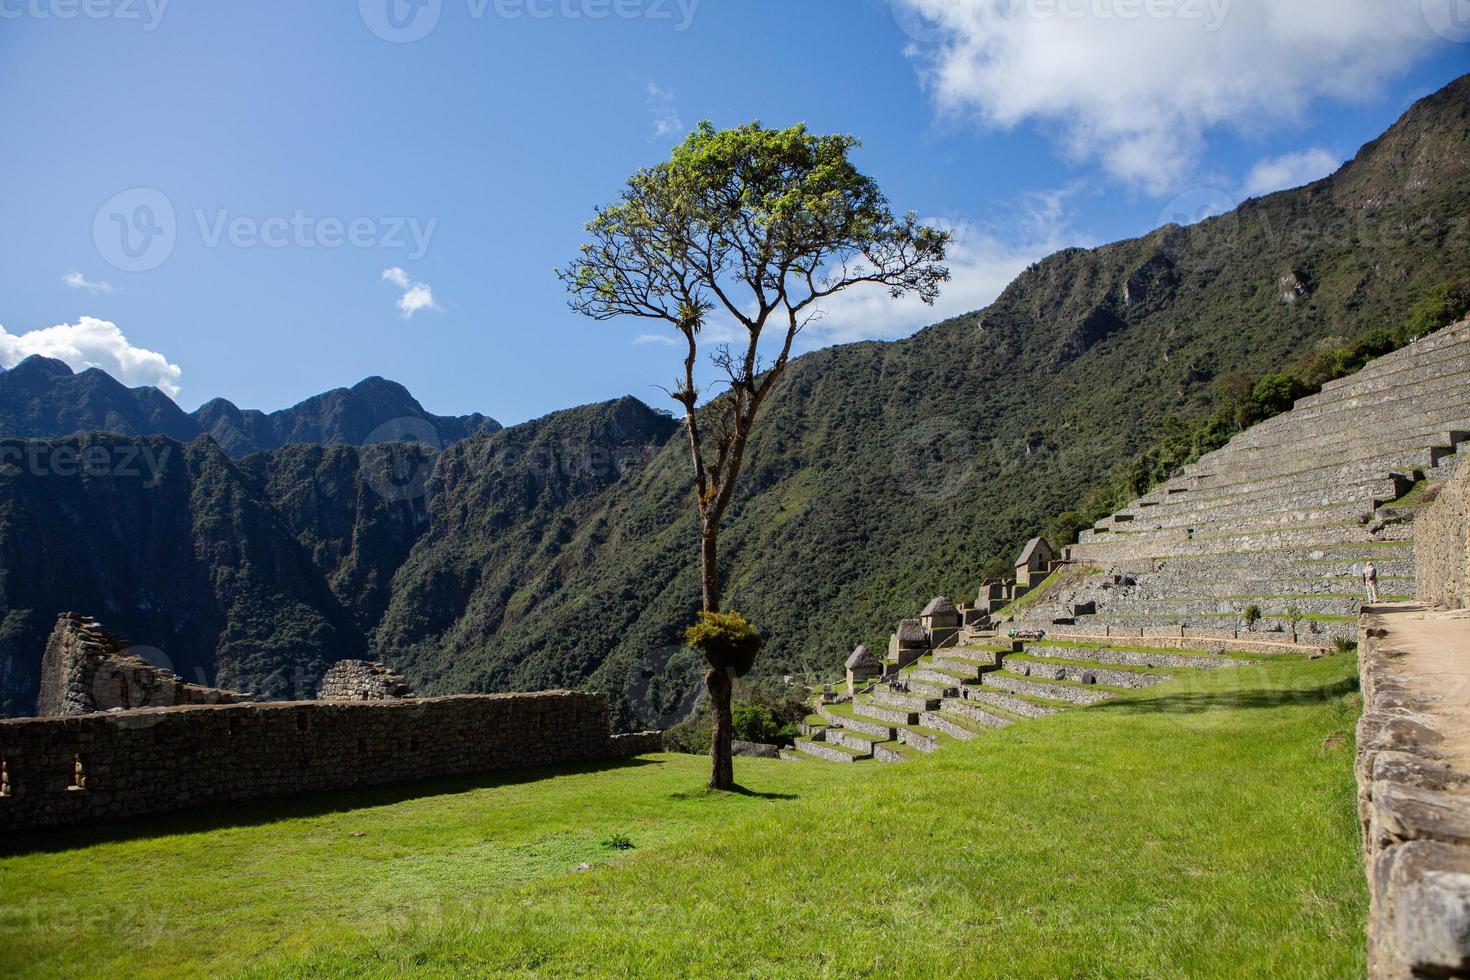 wereldwonder machu picchu in peru. prachtig landschap in het Andesgebergte met inca heilige stadsruïnes. foto